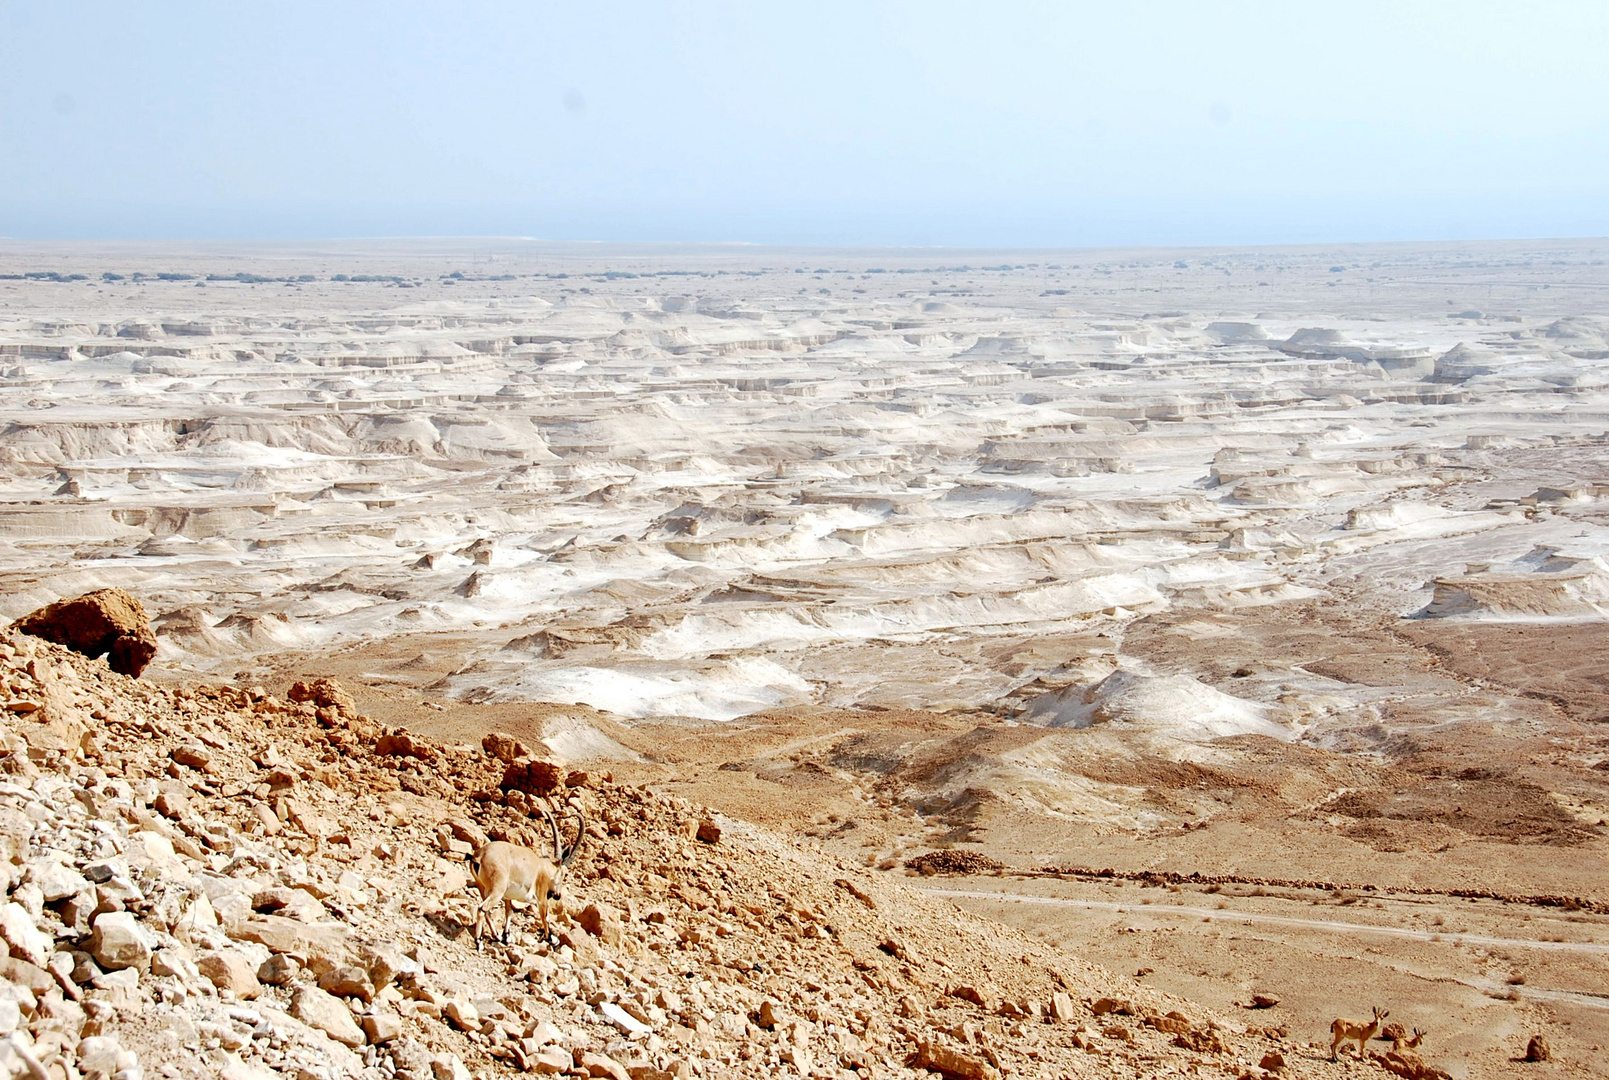 Die Wüste Juda um's Tote Meer...